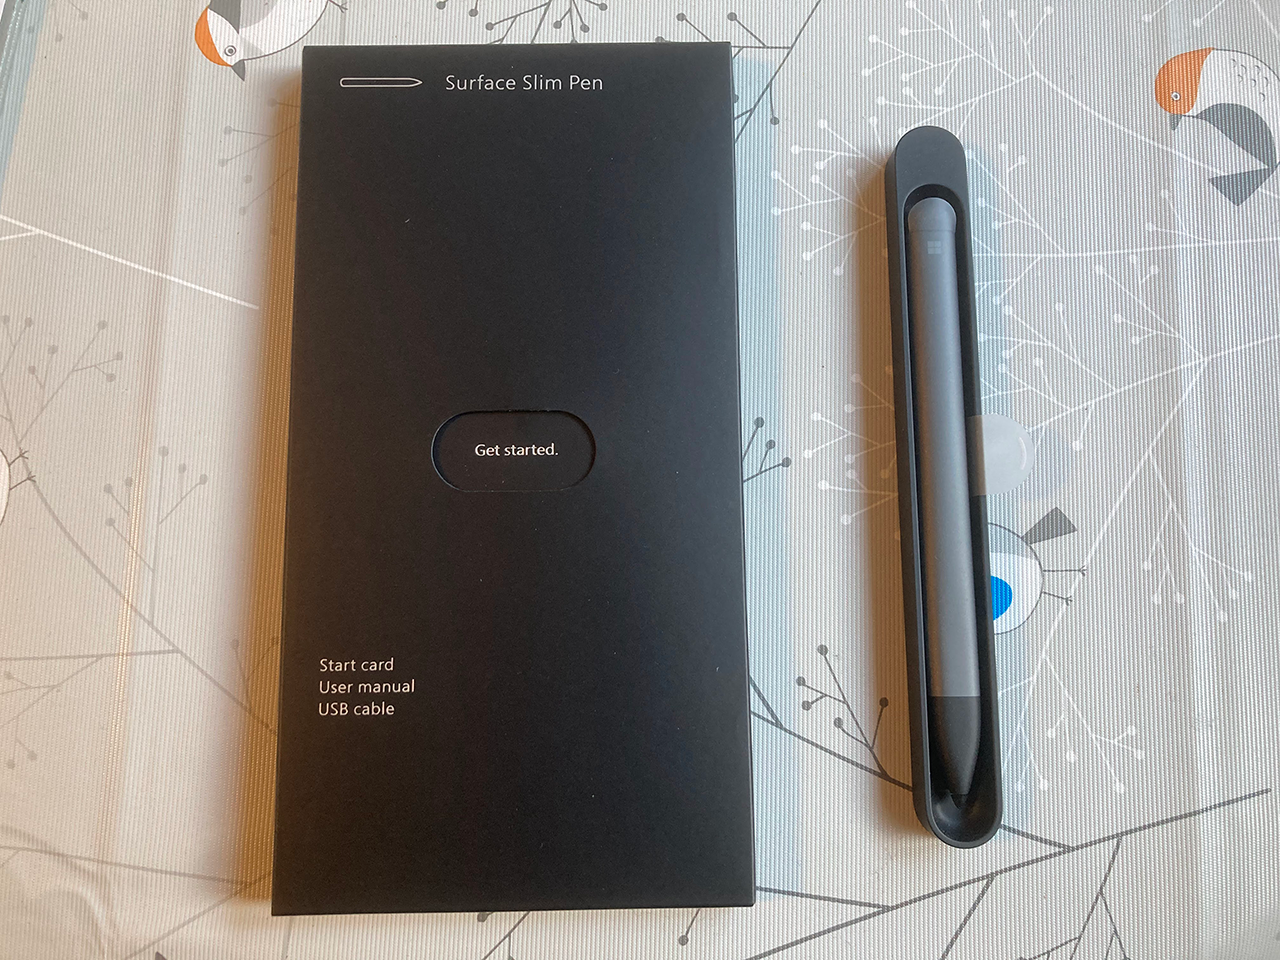 Surface Slim Pen - Get started.